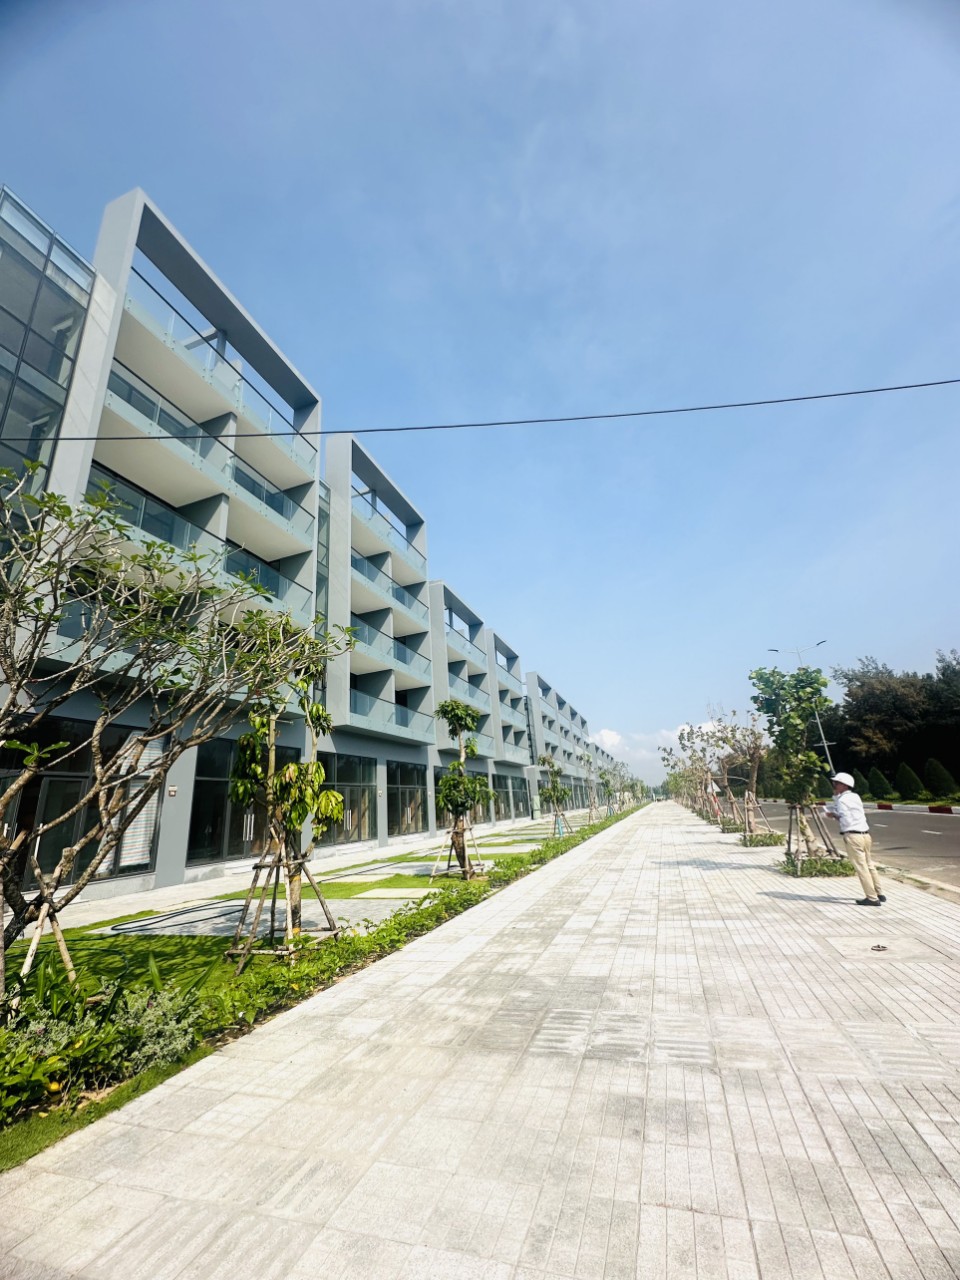 Nhà phố giáp biển duy nhất tại Phú Yên, gần tháp Nghinh Phong, XD 3 - 6 tầng, DT 6x21,5m, sổ riêng - Ảnh 3